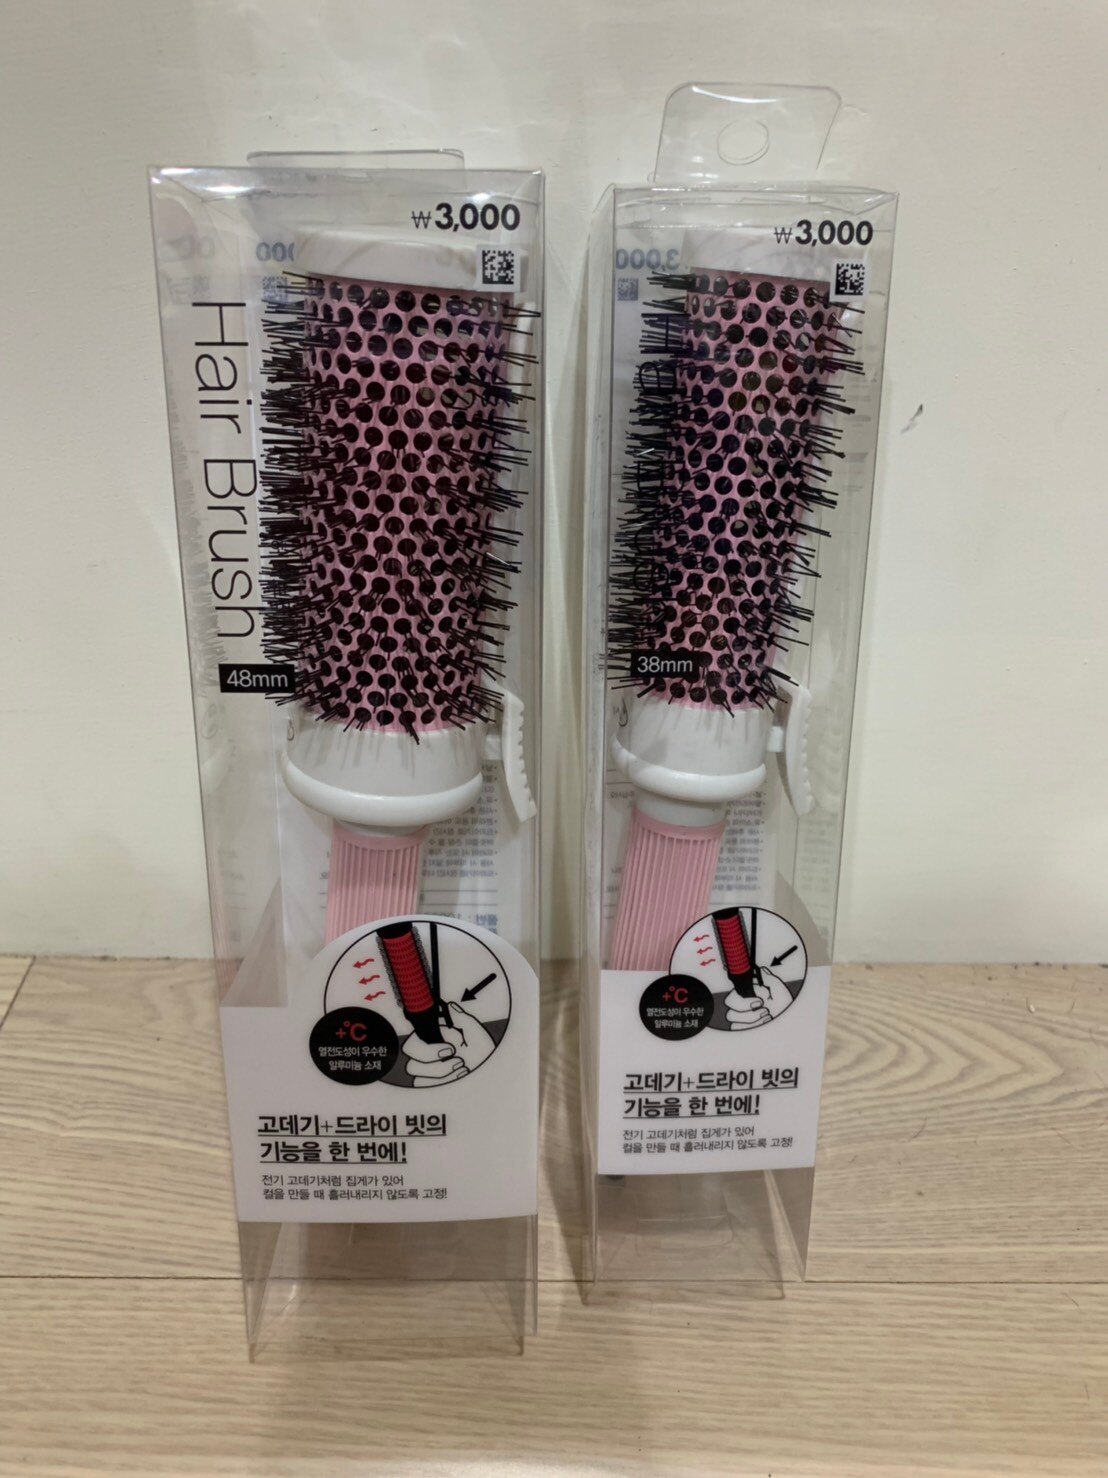 韓國 Daiso 大創 捲髮梳 兩種款式 (M 38mm / L 48mm)。人氣店家日韓小潼的美容美髮工具有最棒的商品。快到日本NO.1的Rakuten樂天市場的安全環境中盡情網路購物，使用樂天信用